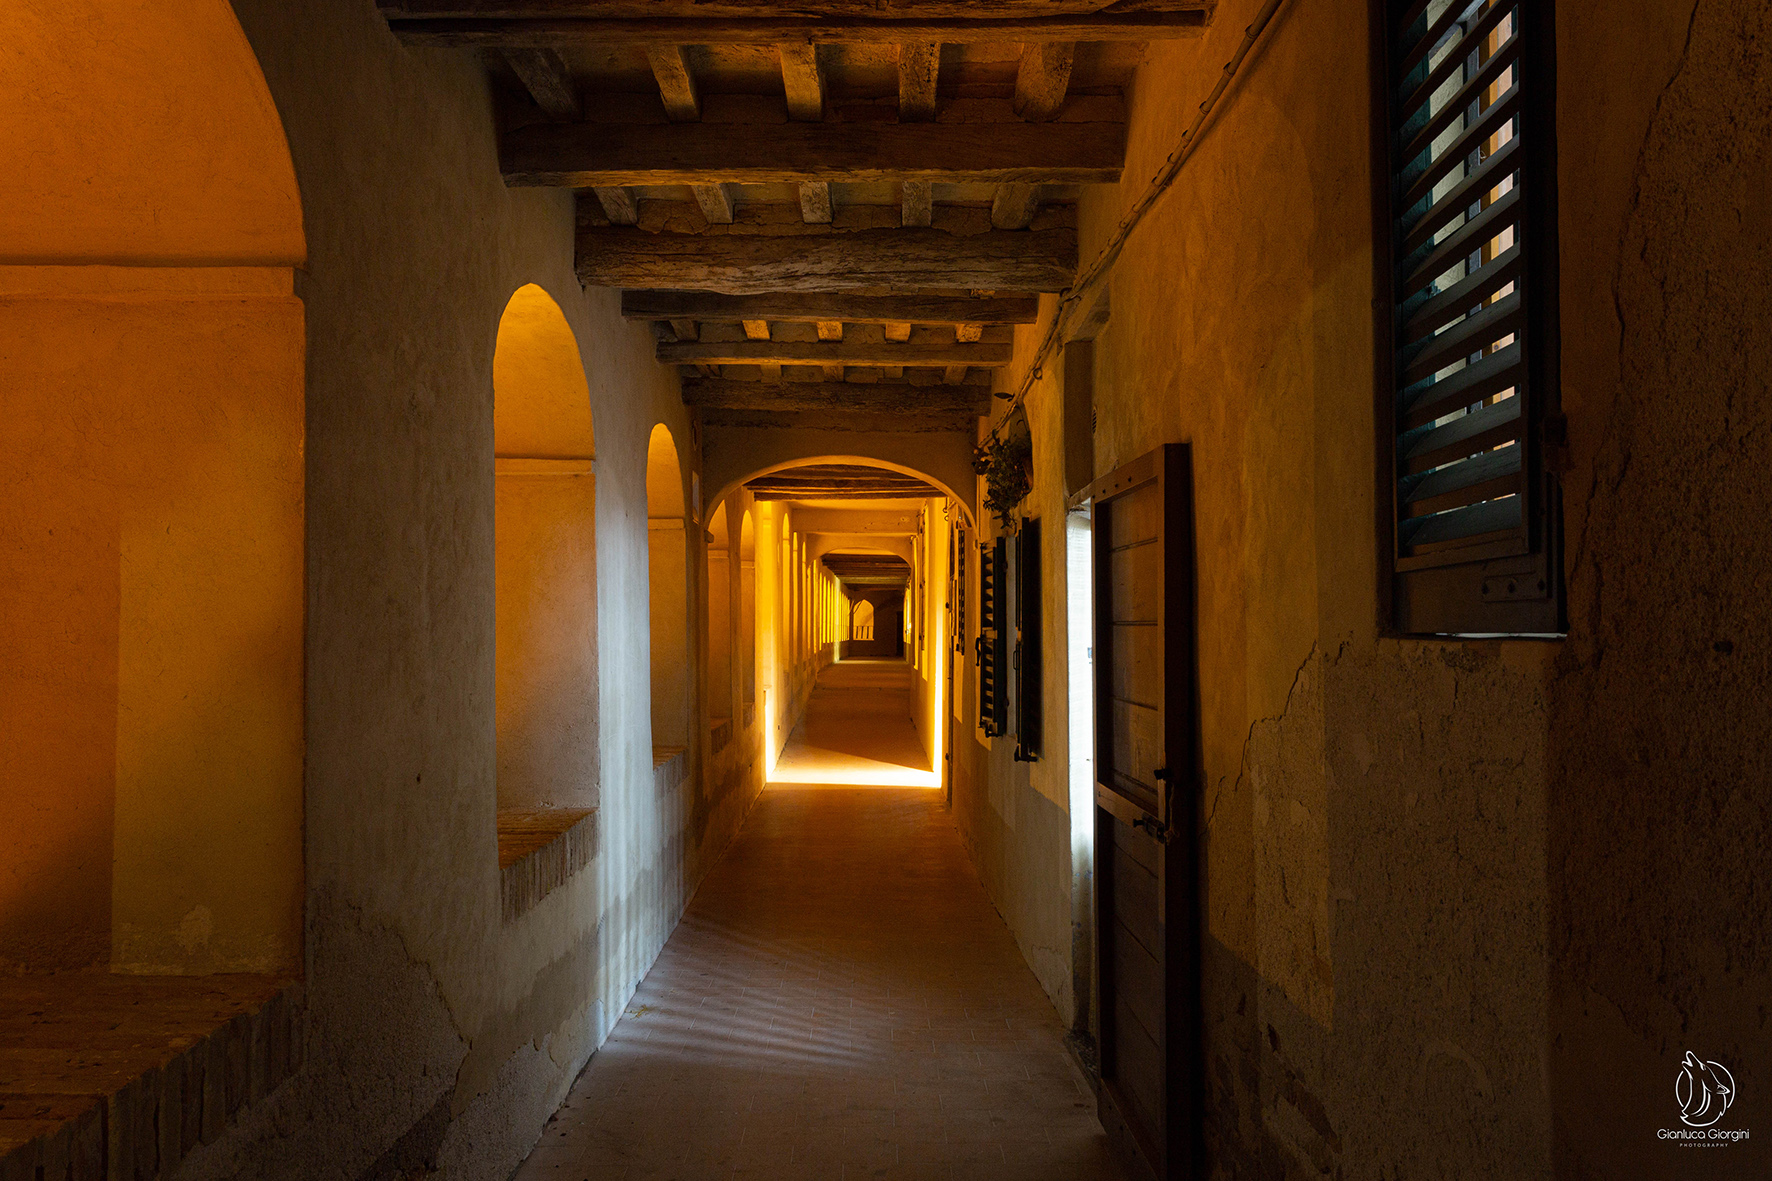 Marchestorie a Morro d’Alba per scoprire i segreti di uno dei “Borghi più belli d’Italia”